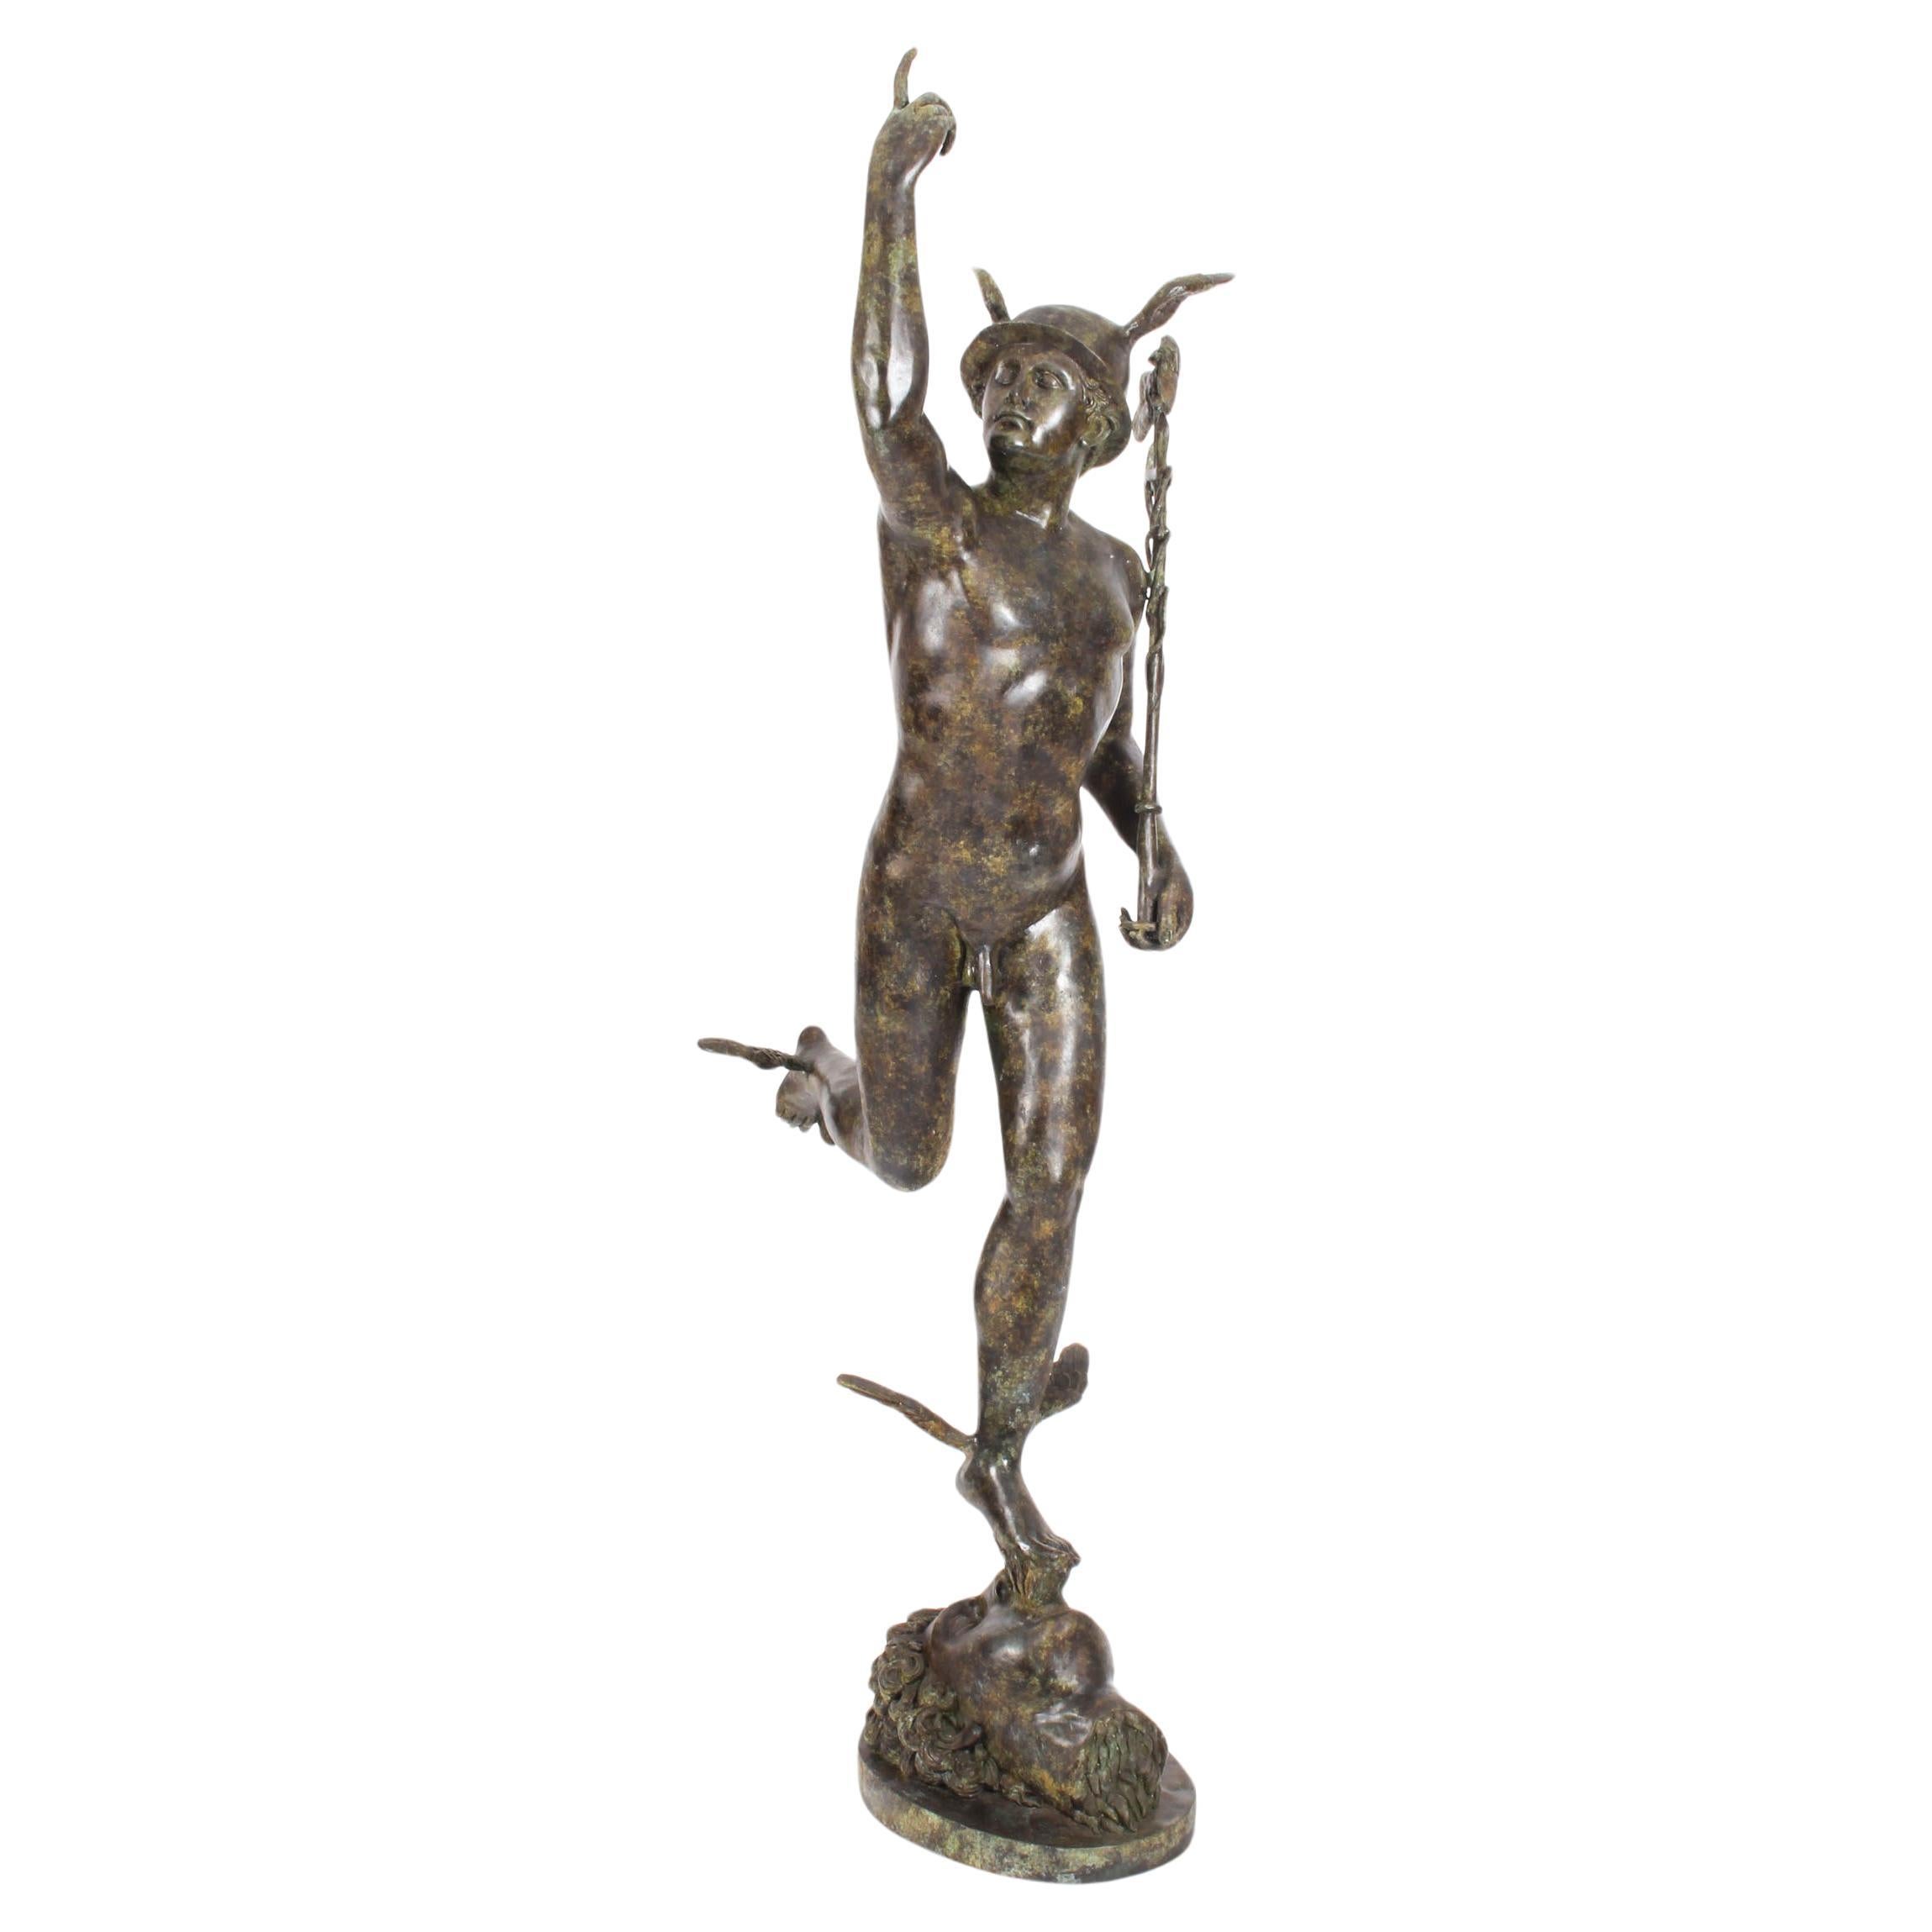 Große Vintage-Bronze-Skulptur von Mercury Hermes, 6 Fuß 6 Zoll, Vintage, 20. Jahrhundert